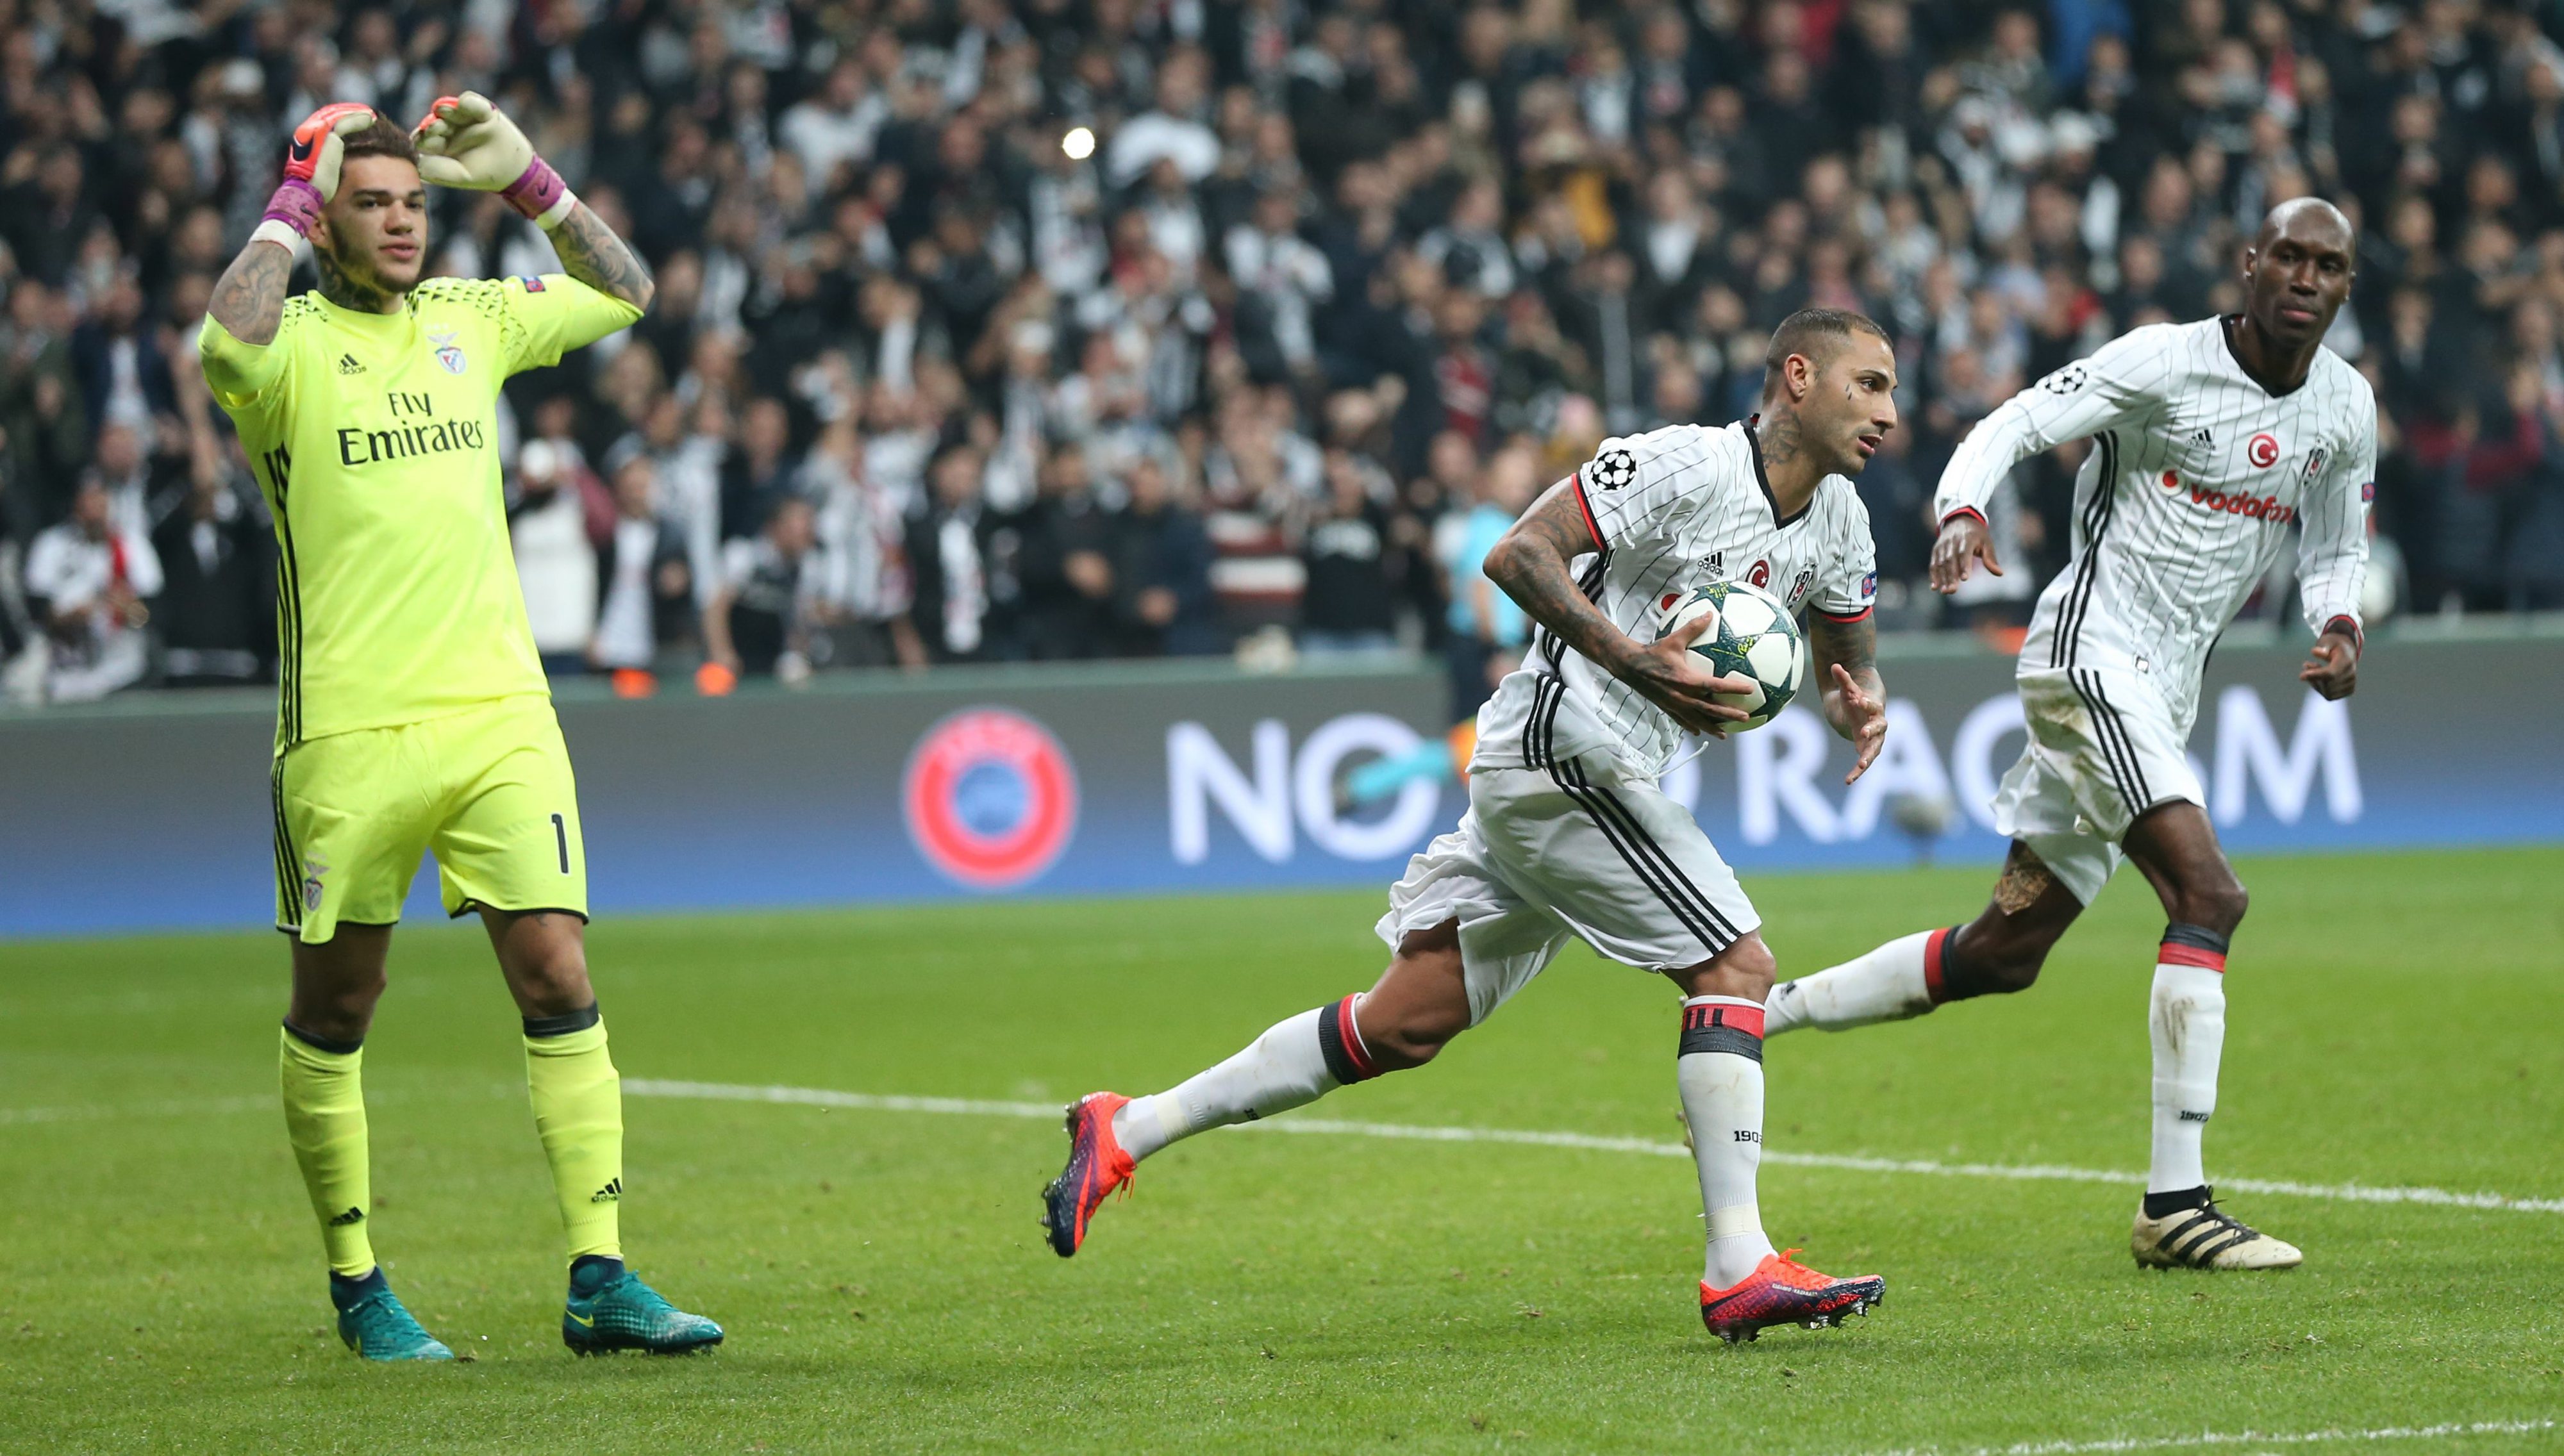 Besiktas empata com Porto e avança na Liga dos Campeões como líder do grupo